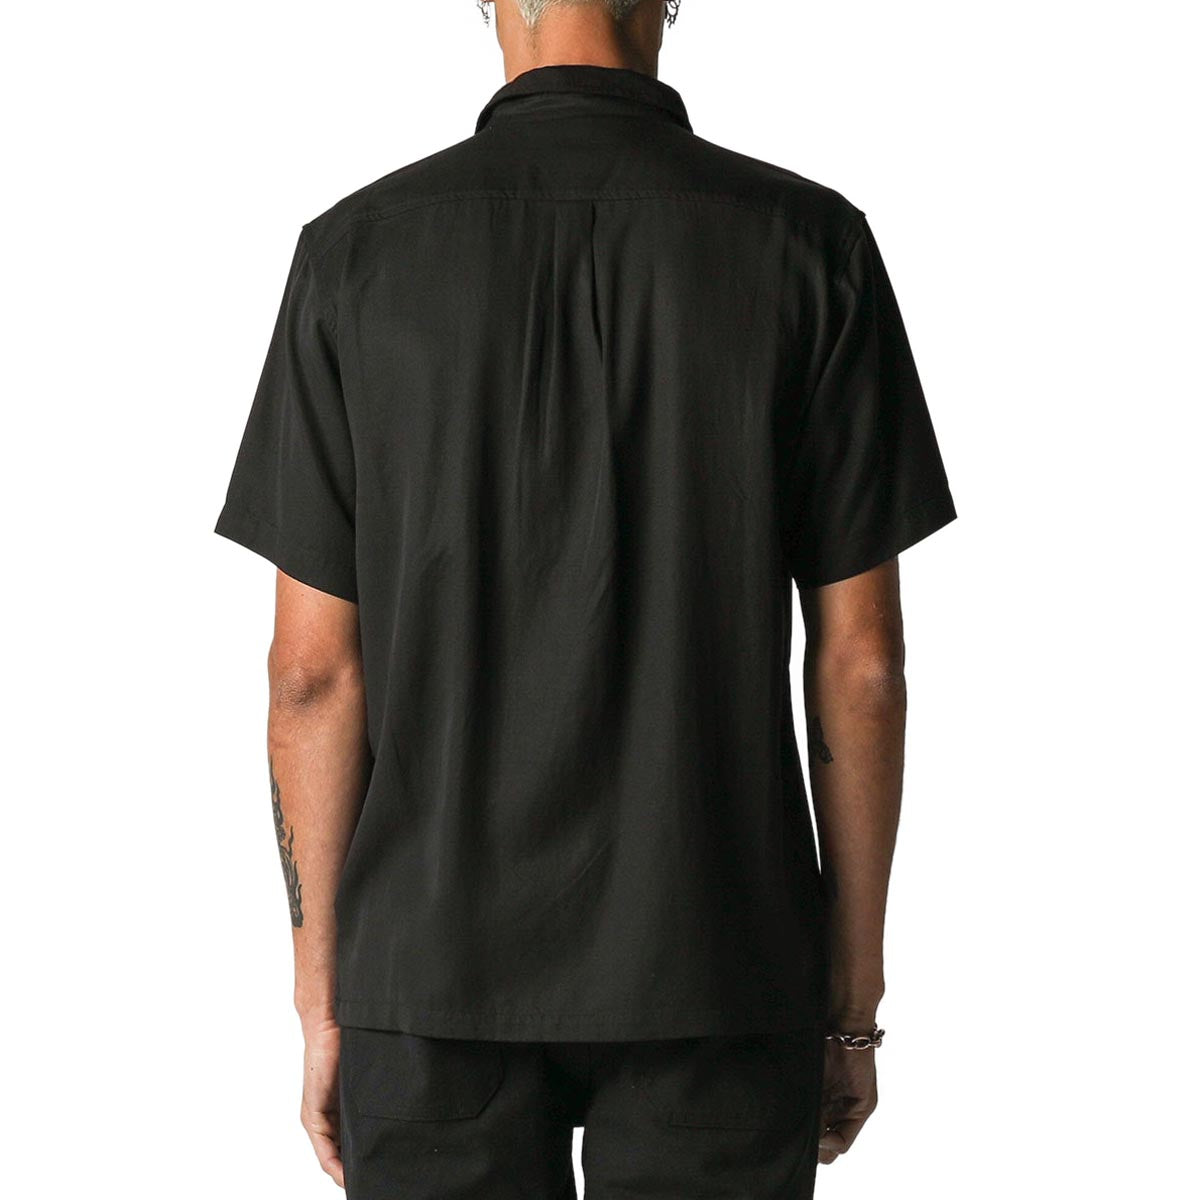 Former Vivian Still Life Shirt - Black image 2